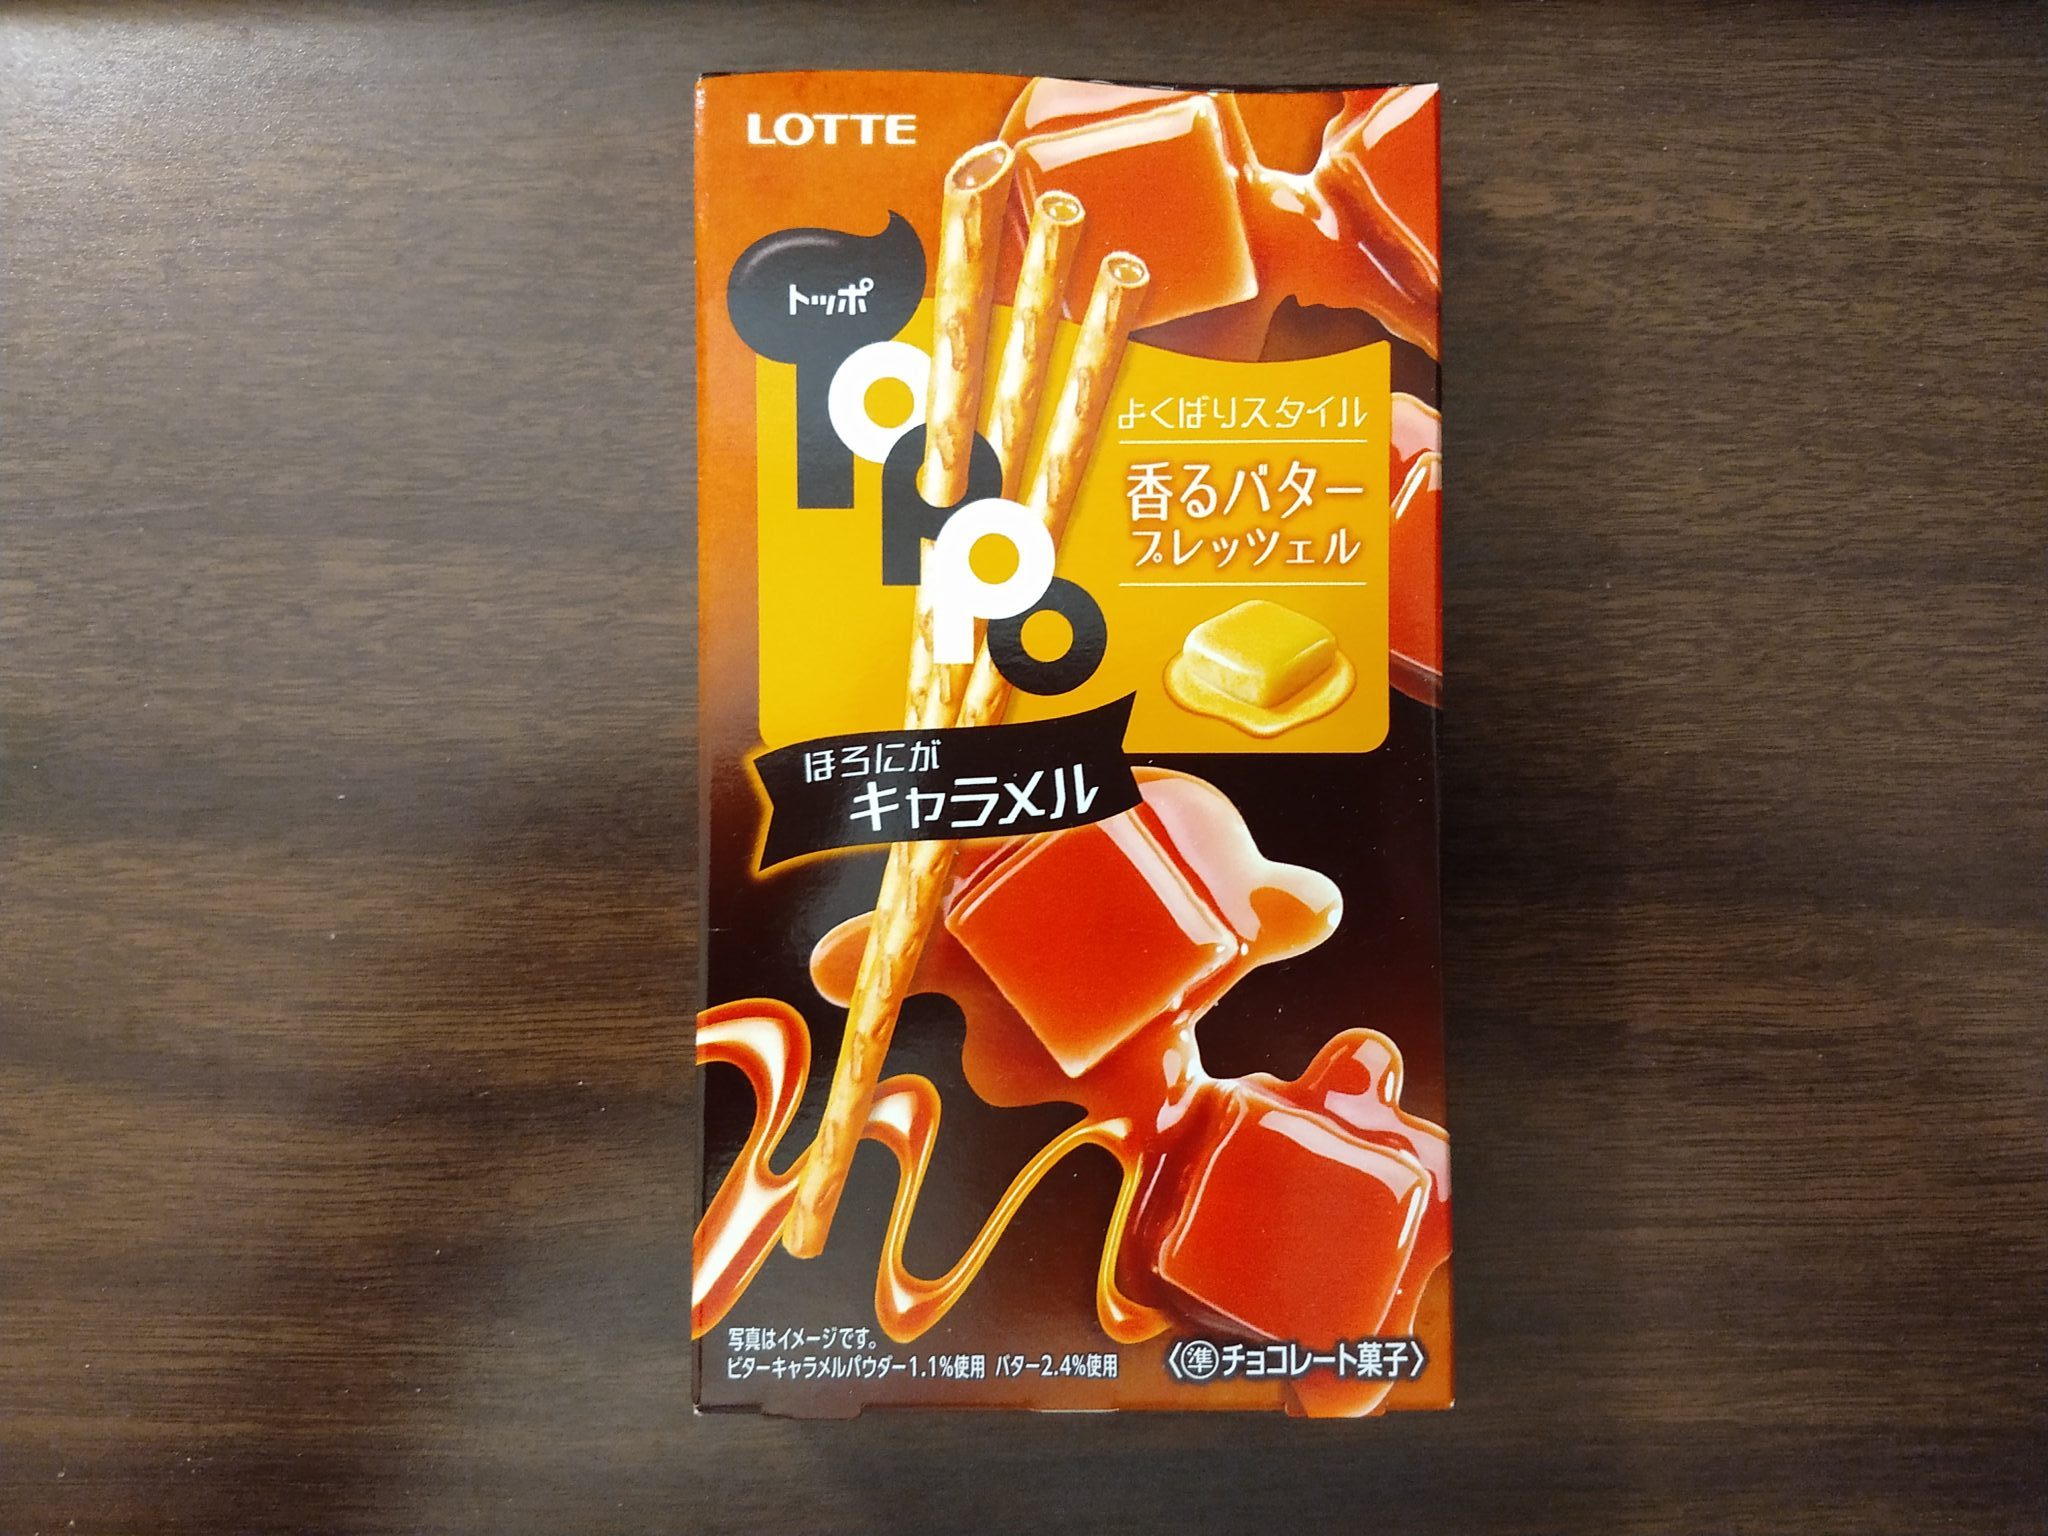 Toppo – Butter Caramel